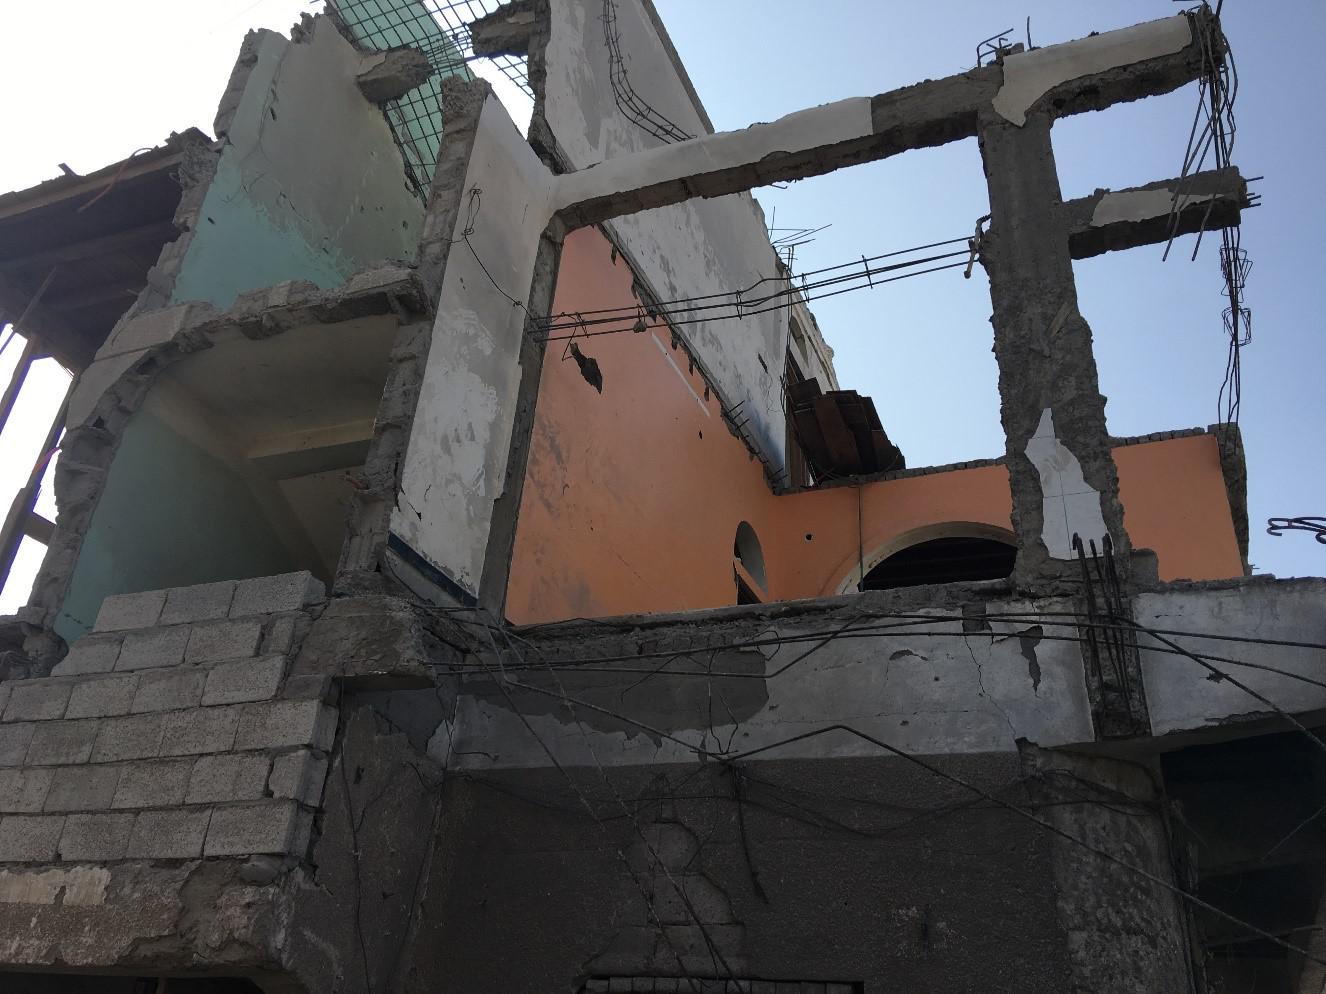 بيت من 3 طوابق في سوق الهنود، وهو حي سكني مزدحم بمدينة الحديدة، وقد أصيب في غارة جوية مساء 21 سبتمبر/أيلول 2016. قتلت قنبلة واحدة 28 مدنيا على الأقل بينهم 8 أطفال. 